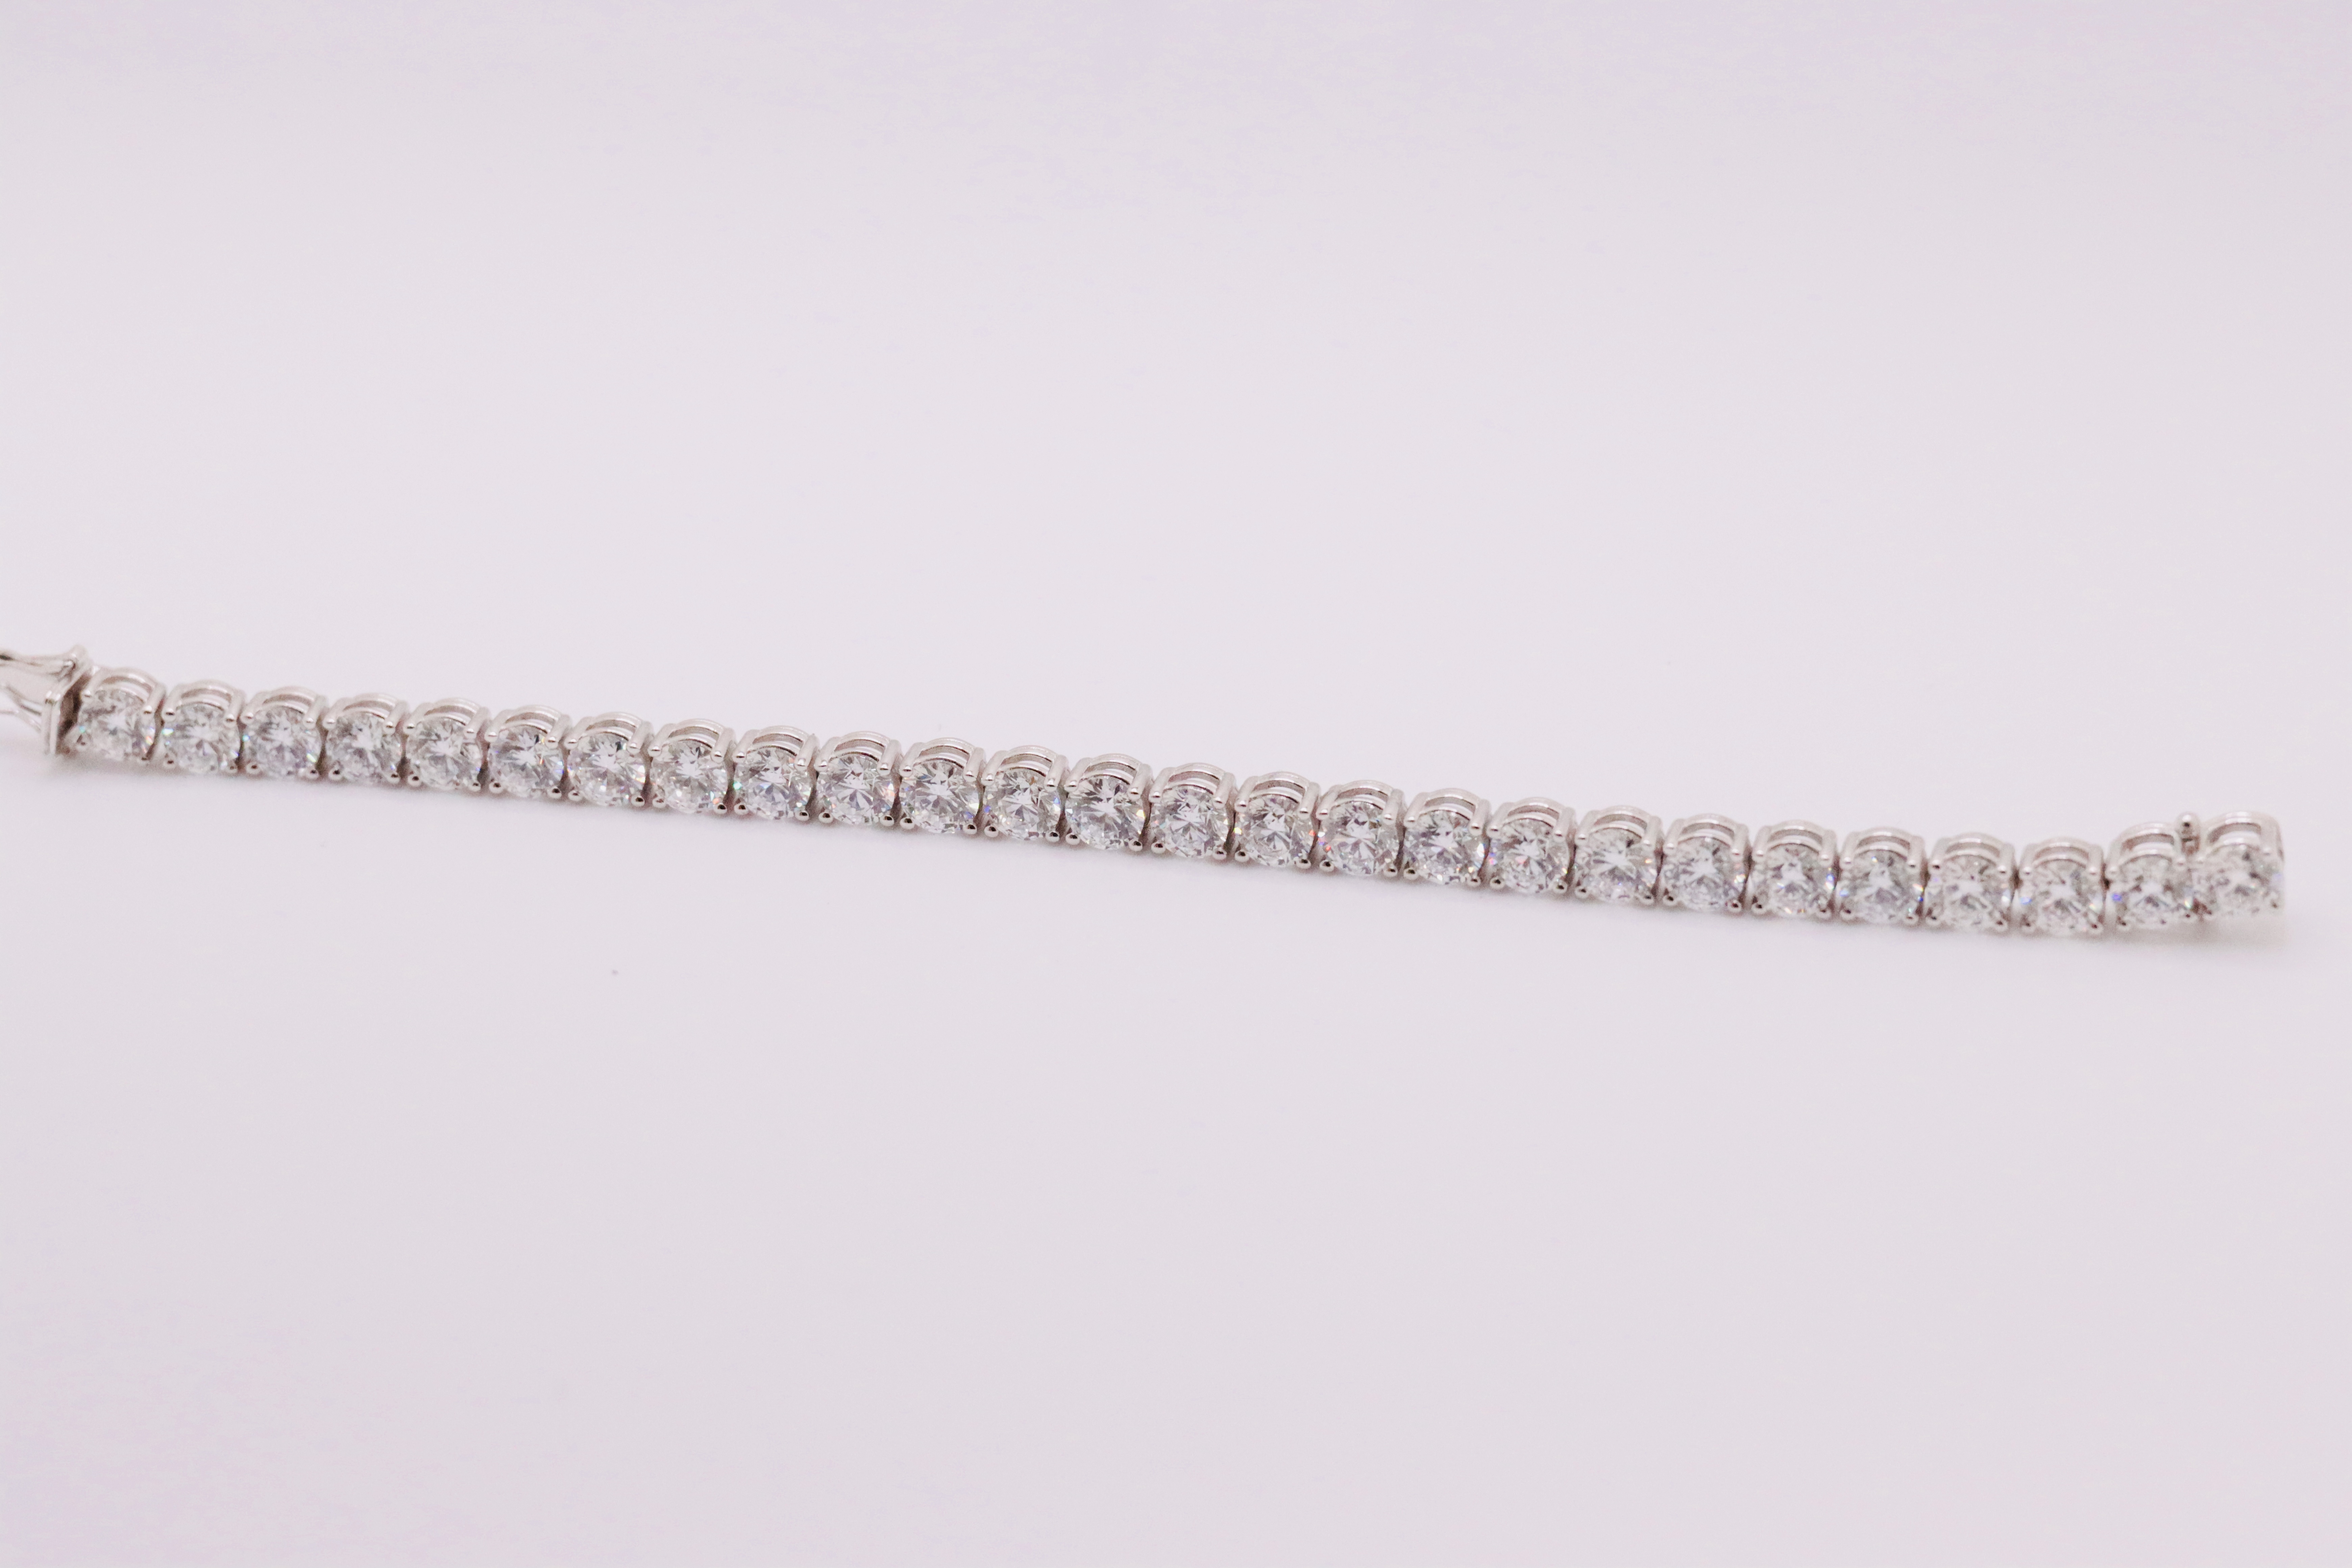 Round Brilliant Cut 21 Carat Diamond Tennis Bracelet D Colour VVS Clarity - 18Kt White Gold - IGI - Image 4 of 6